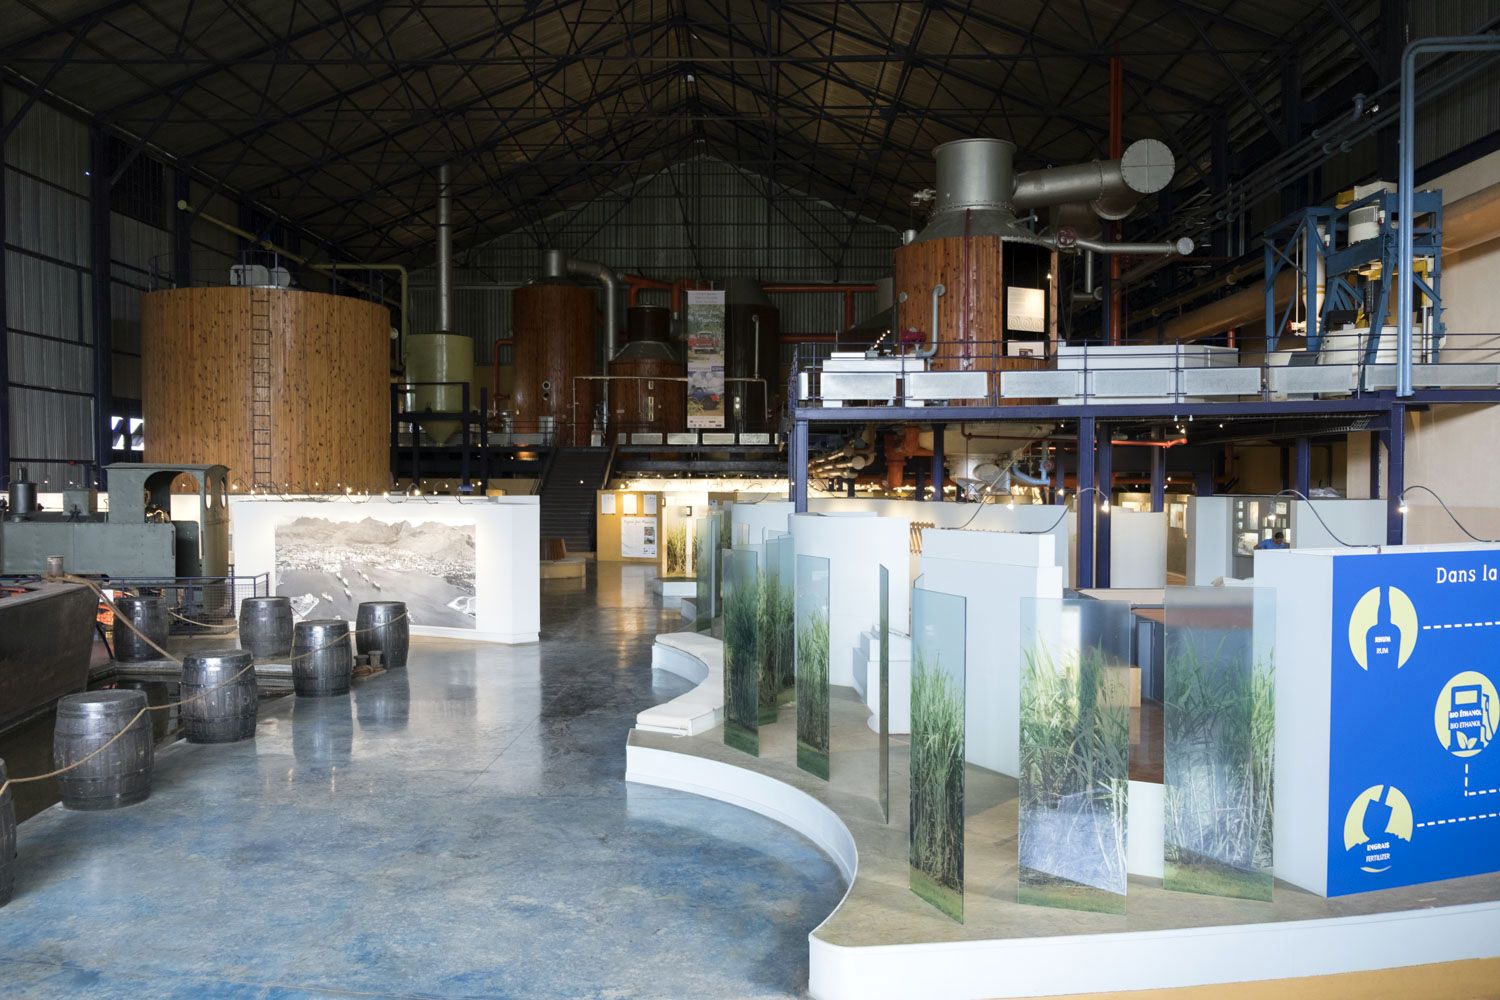 Le Musée a pris place dans l’ancienne usine sucrière de Beau Plan dont la machinerie a été conservée.